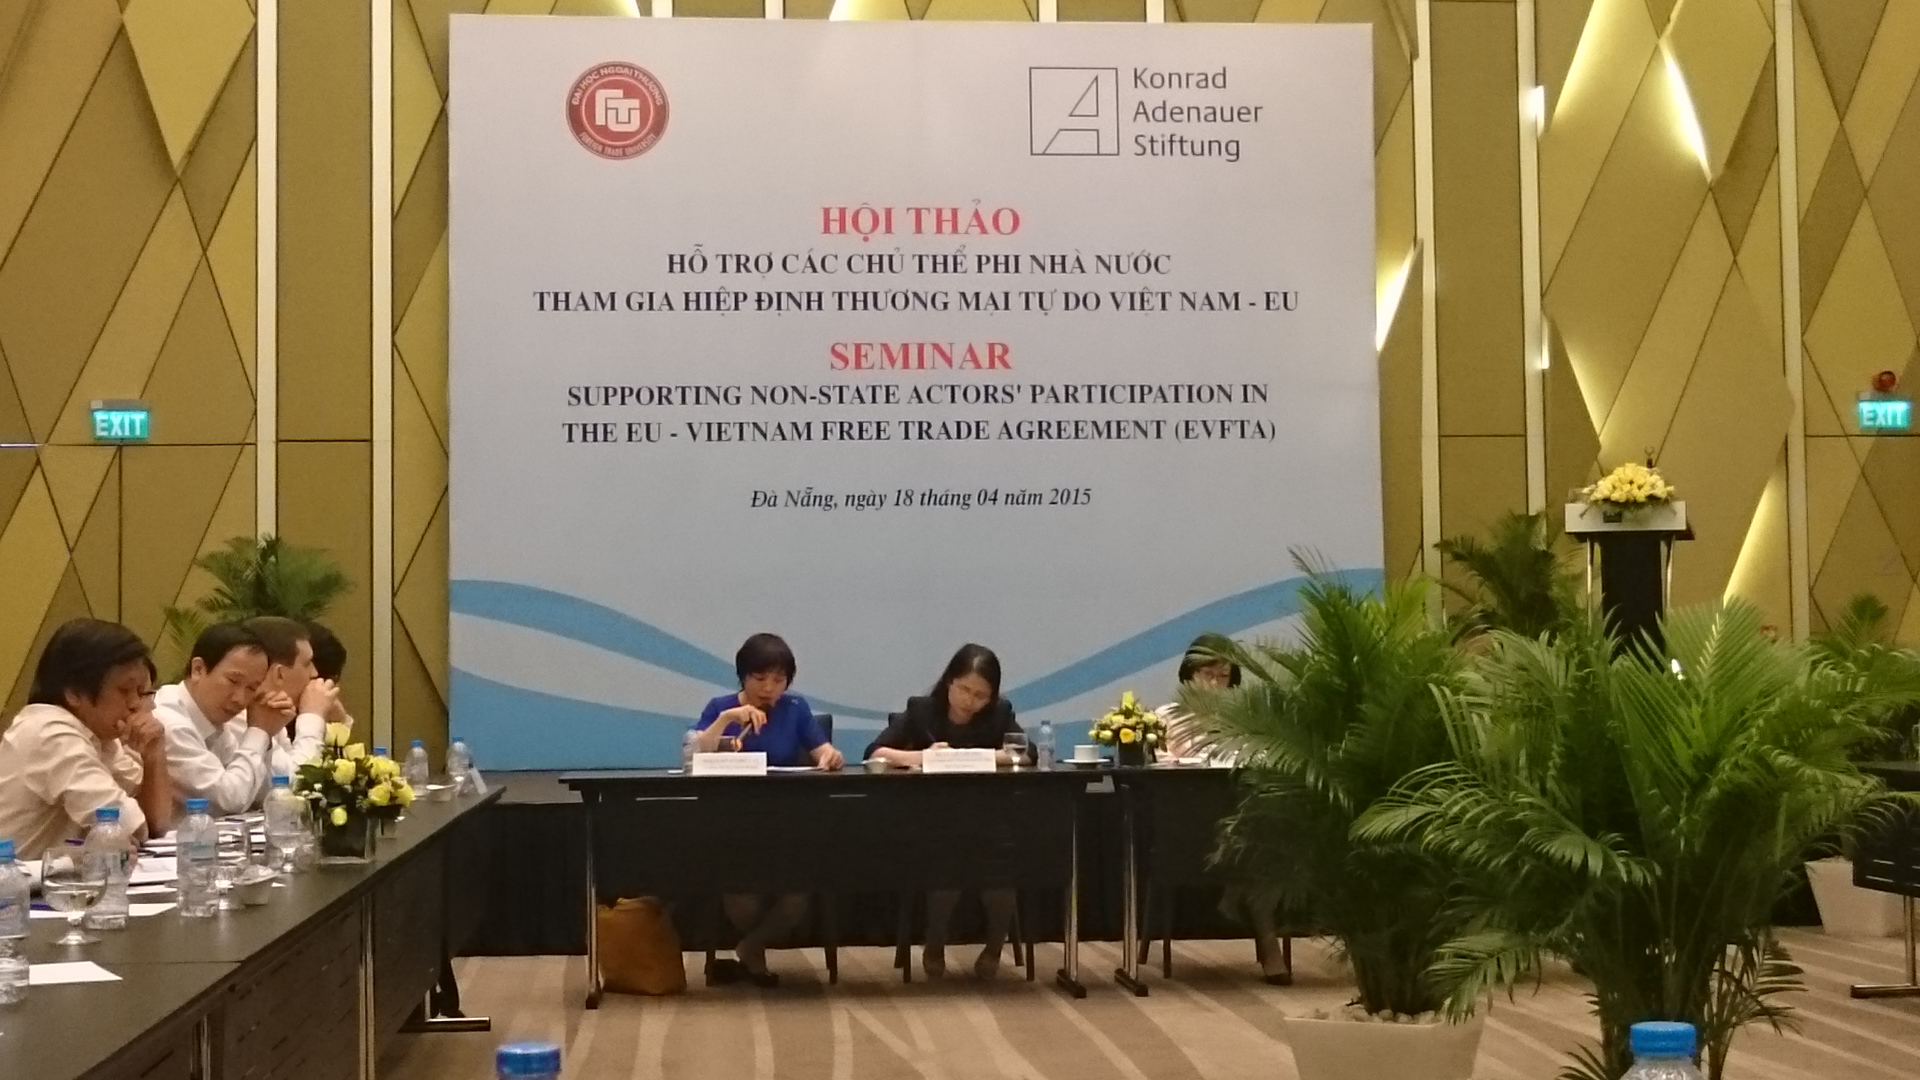 Hội thảo 'Hỗ trợ các chủ thể phi nhà nước tham gia Hiệp định thương mại tự do Việt Nam - EU